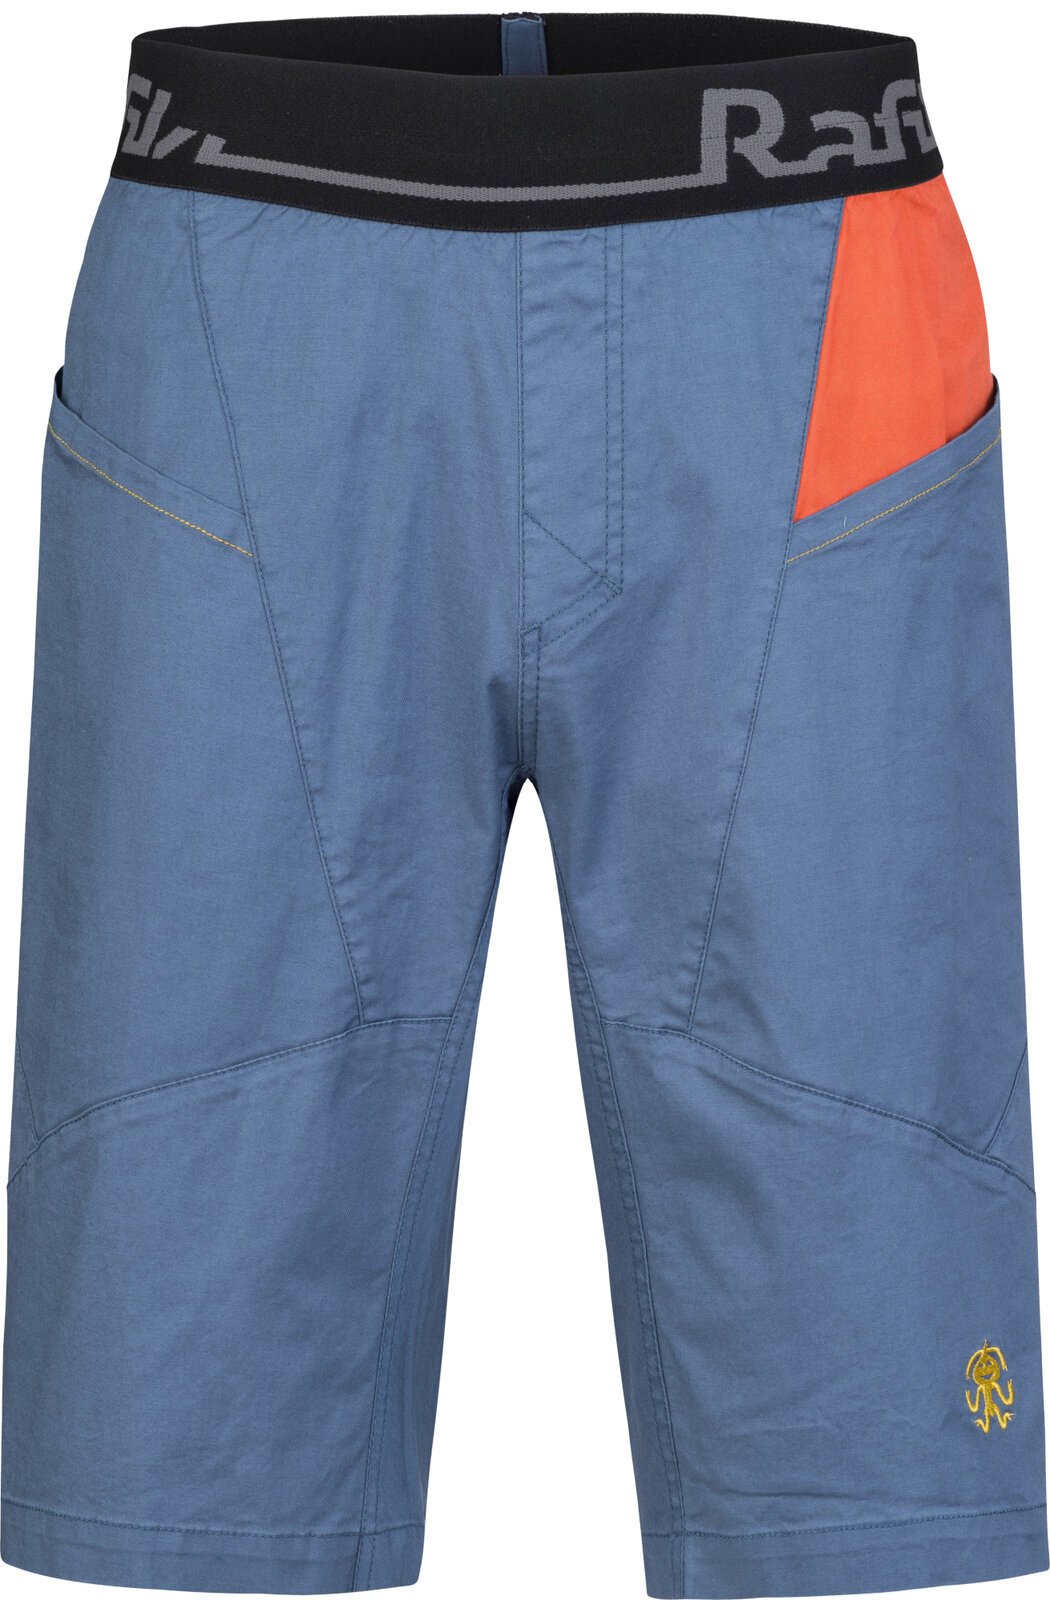 Shorts til udendørs brug Rafiki Megos Man Shorts Ensign Blue/Clay S Shorts til udendørs brug